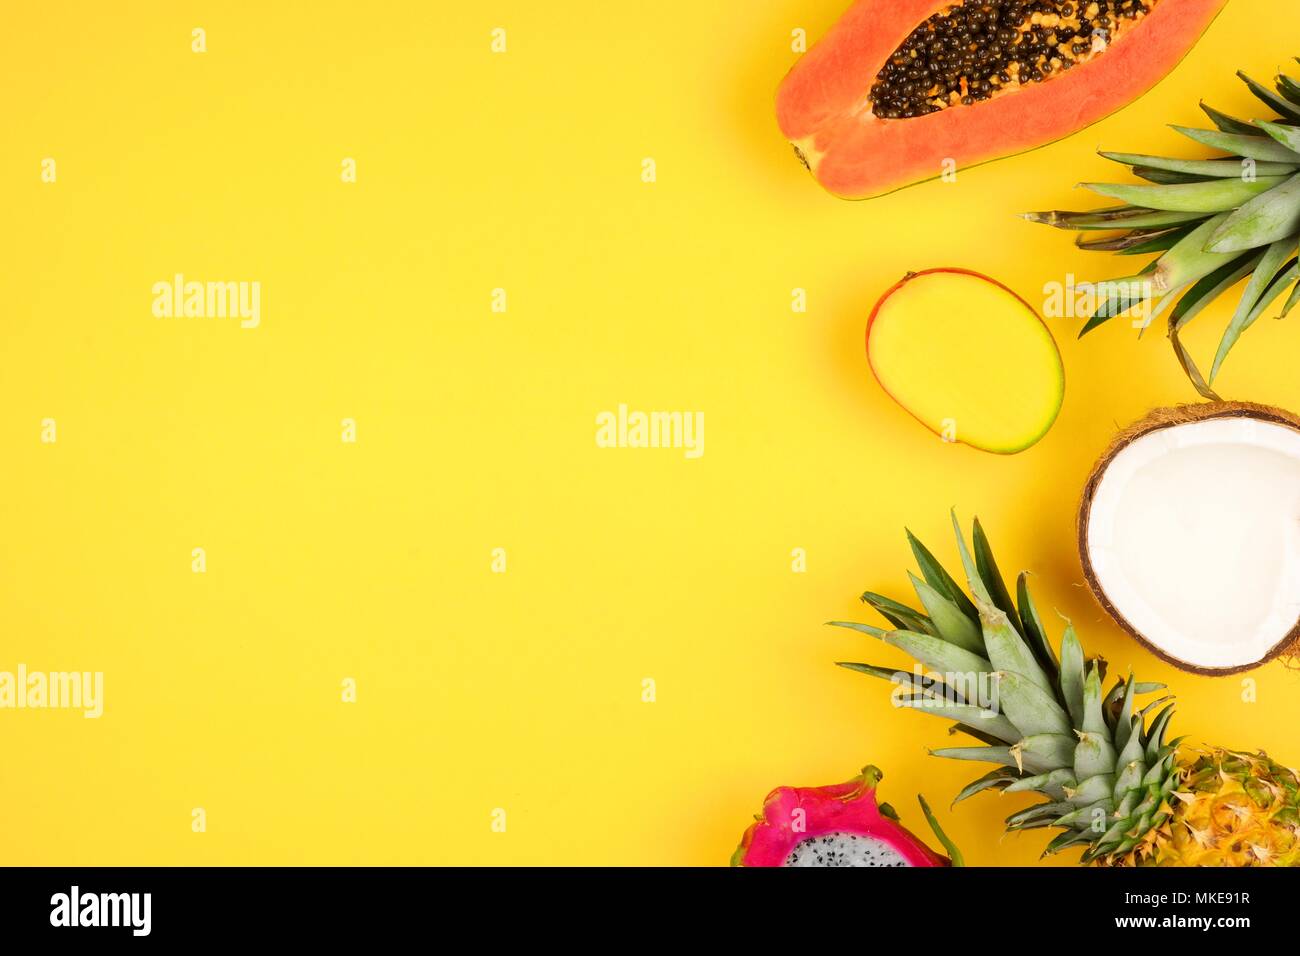 Tropische Früchte Seite Grenze mit Ananas, Drachenfrucht, Papaya, Kokos und Mango auf einem hellen gelben Hintergrund Stockfoto